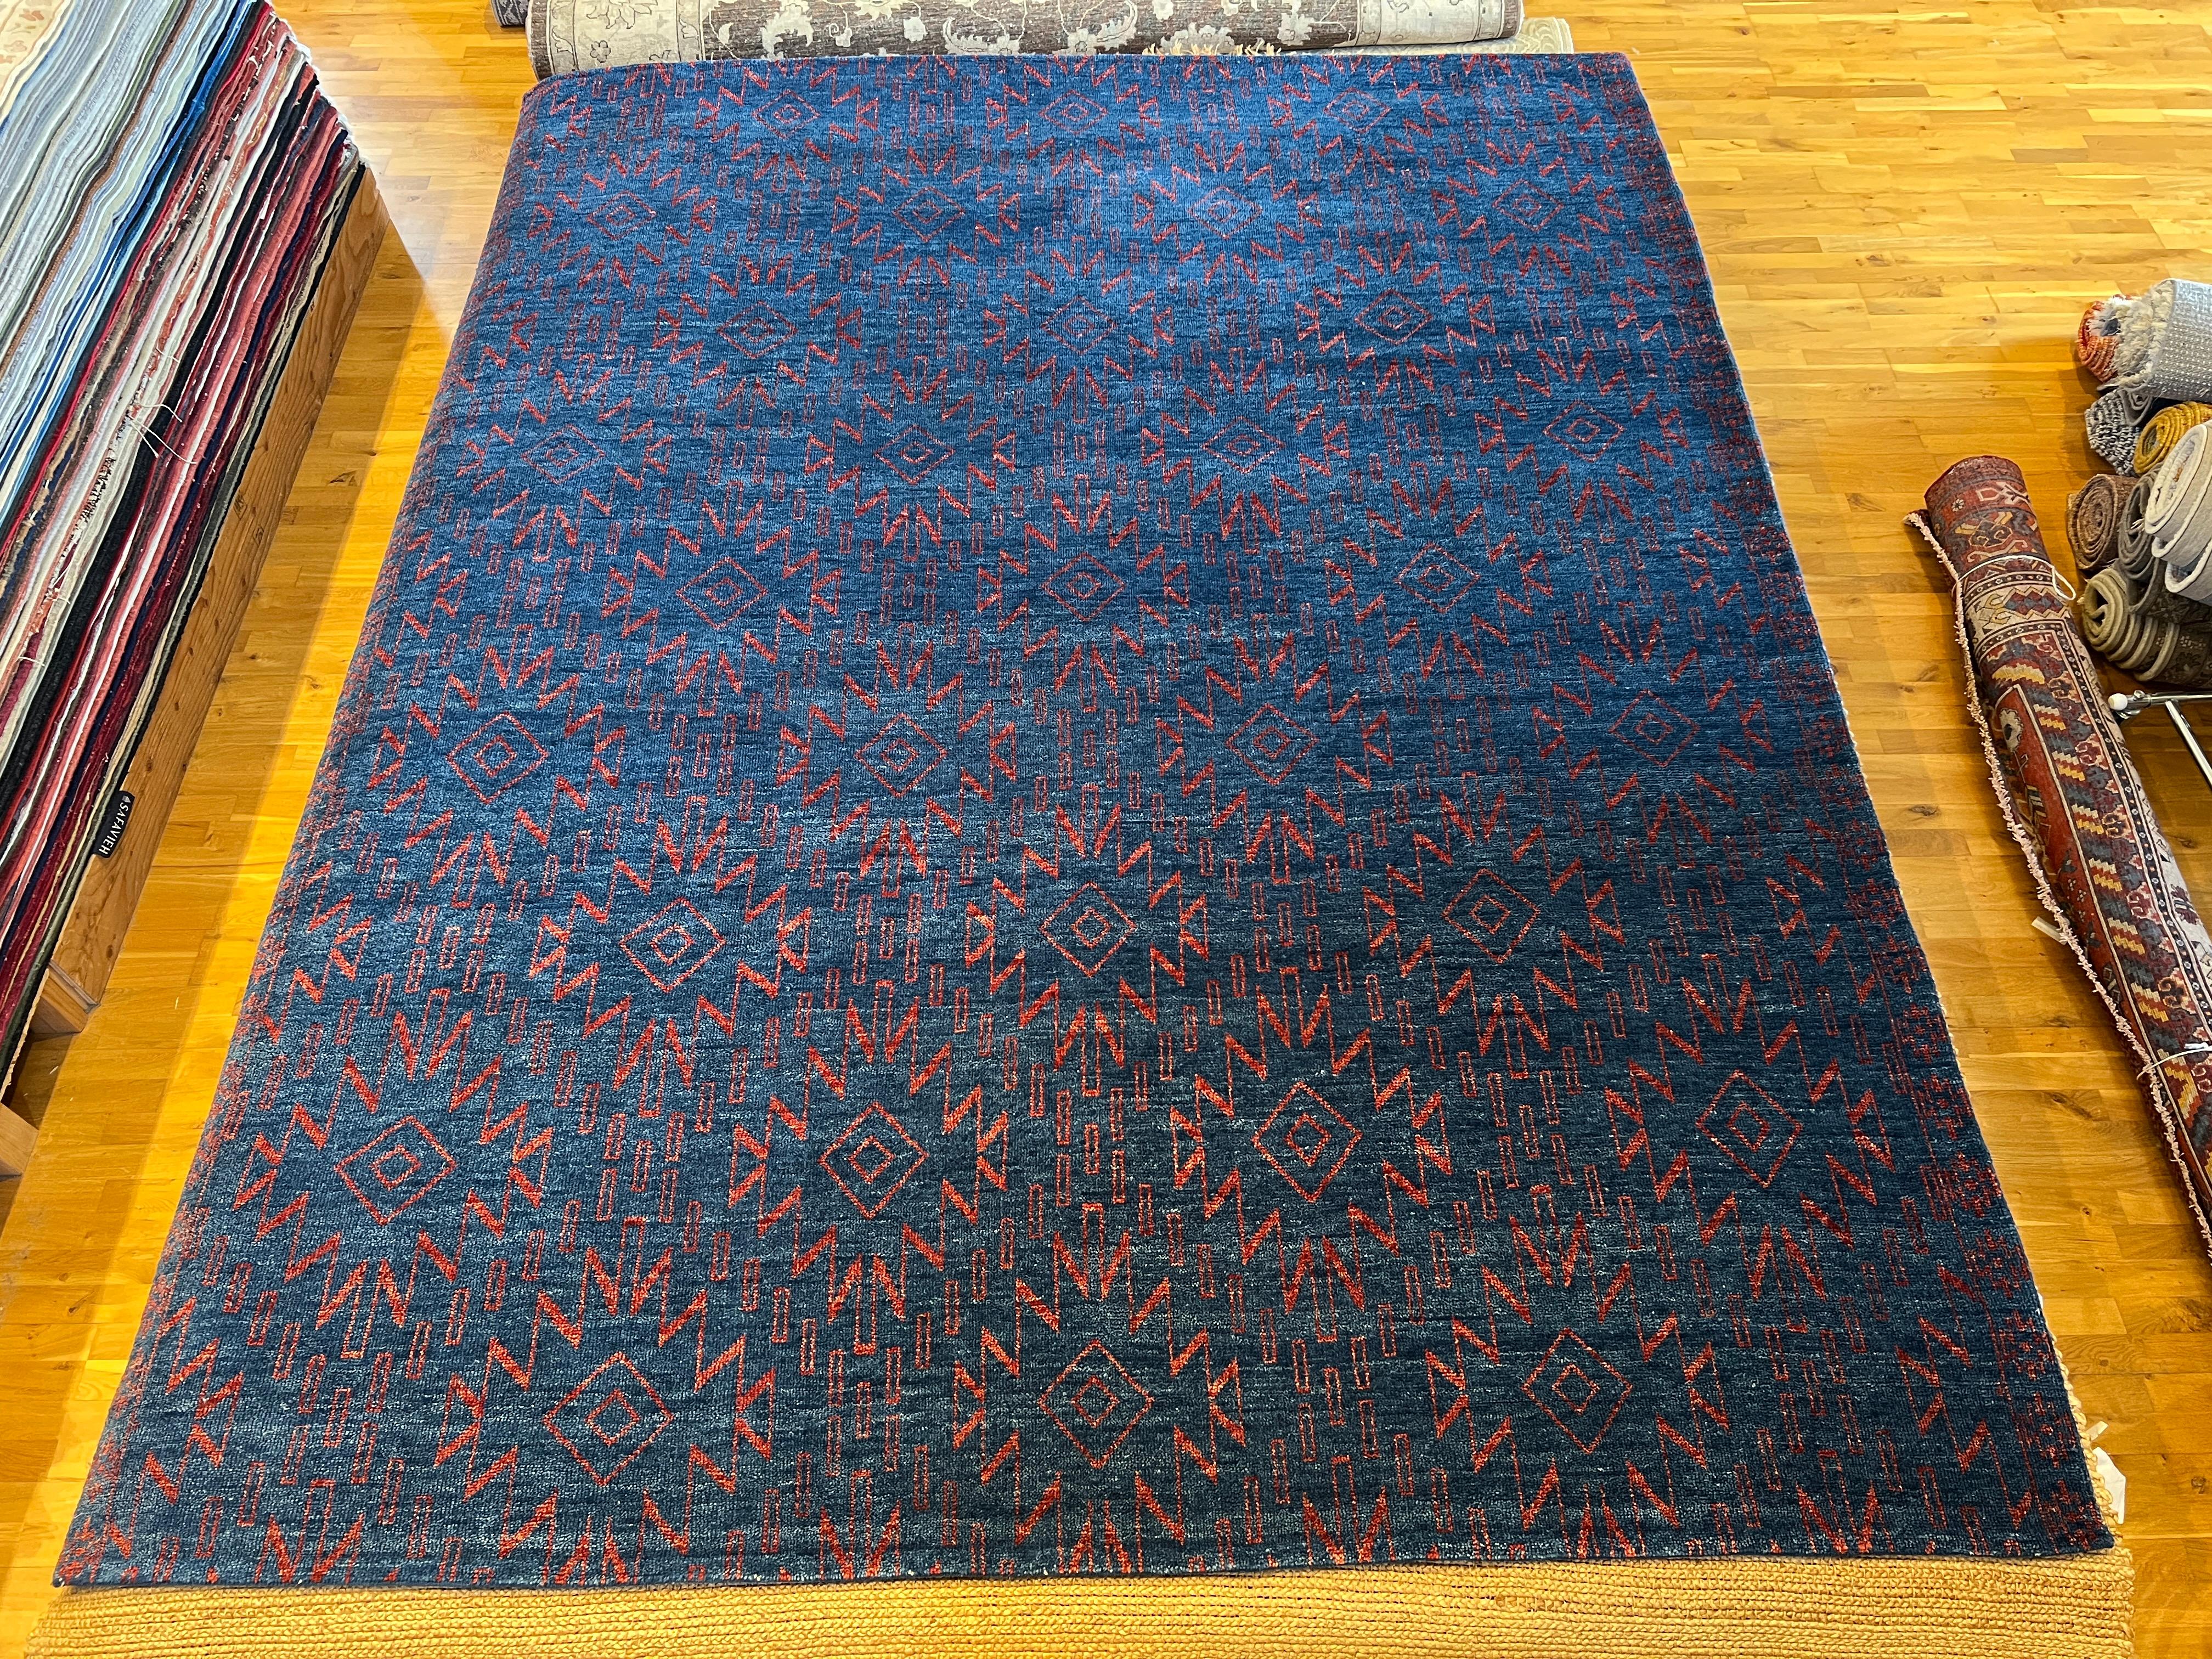 Verleihen Sie Ihrem Zuhause mit unserem marokkanischen Teppich 9'x12' einen Hauch von modernem Stammesstil. Der leuchtend blaue Hintergrund und der rote Akzent sind ein Blickfang in jedem Raum. Dieser weiche und strapazierfähige Teppich wird Ihren